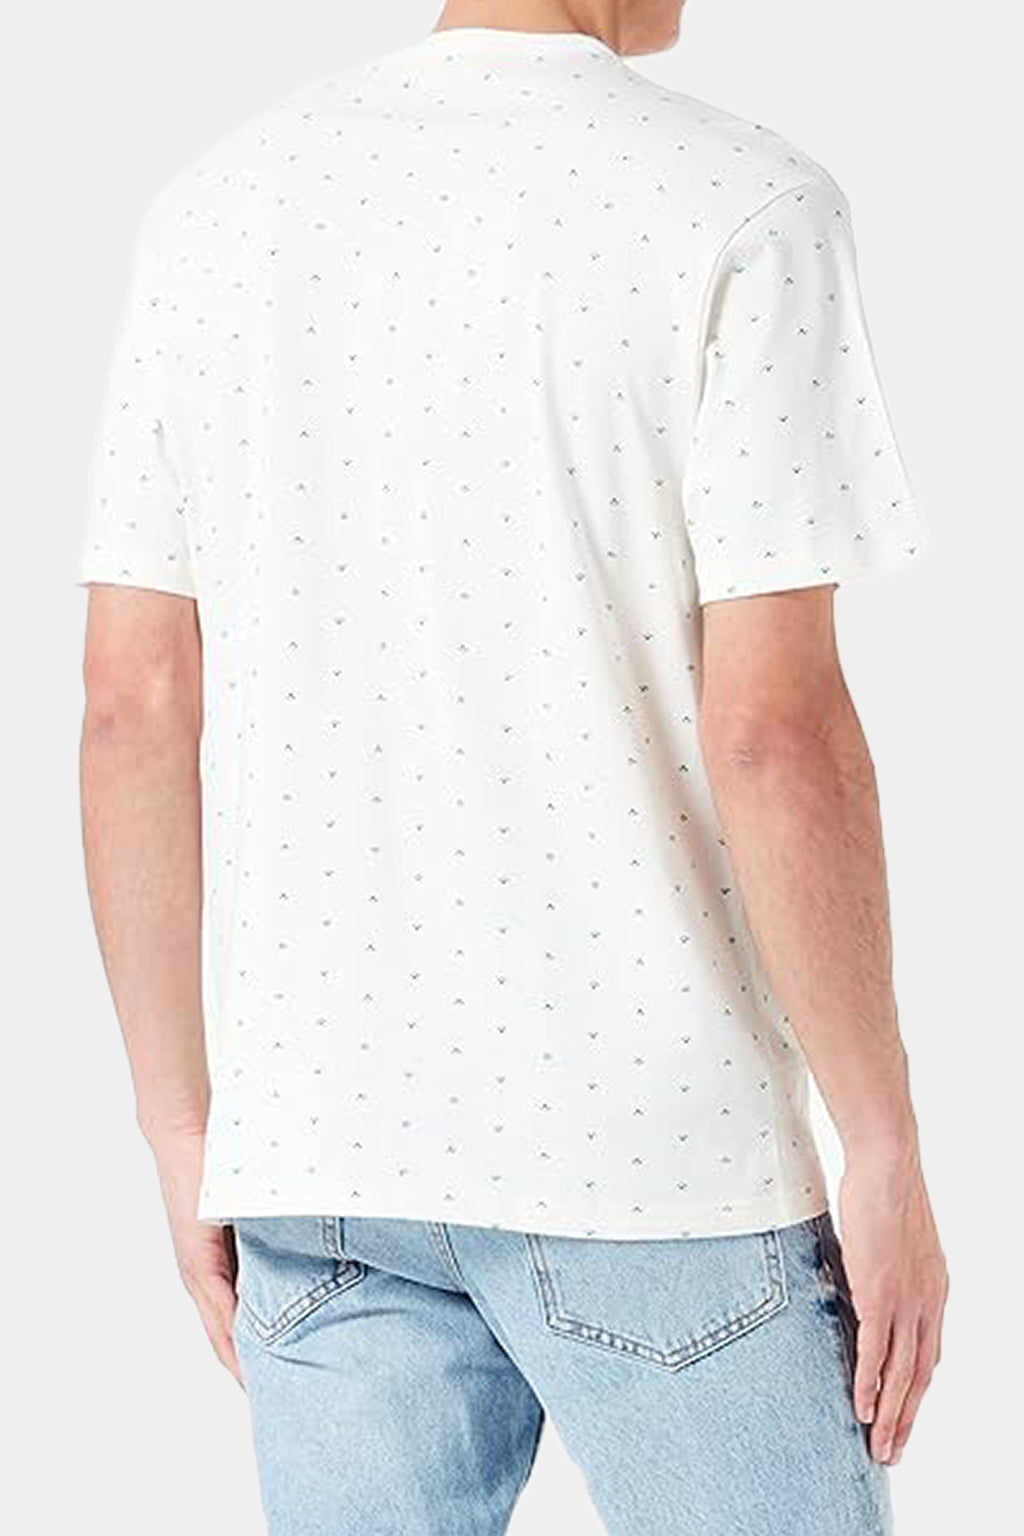 Tom Tailor -  Denim Men's T-shirt